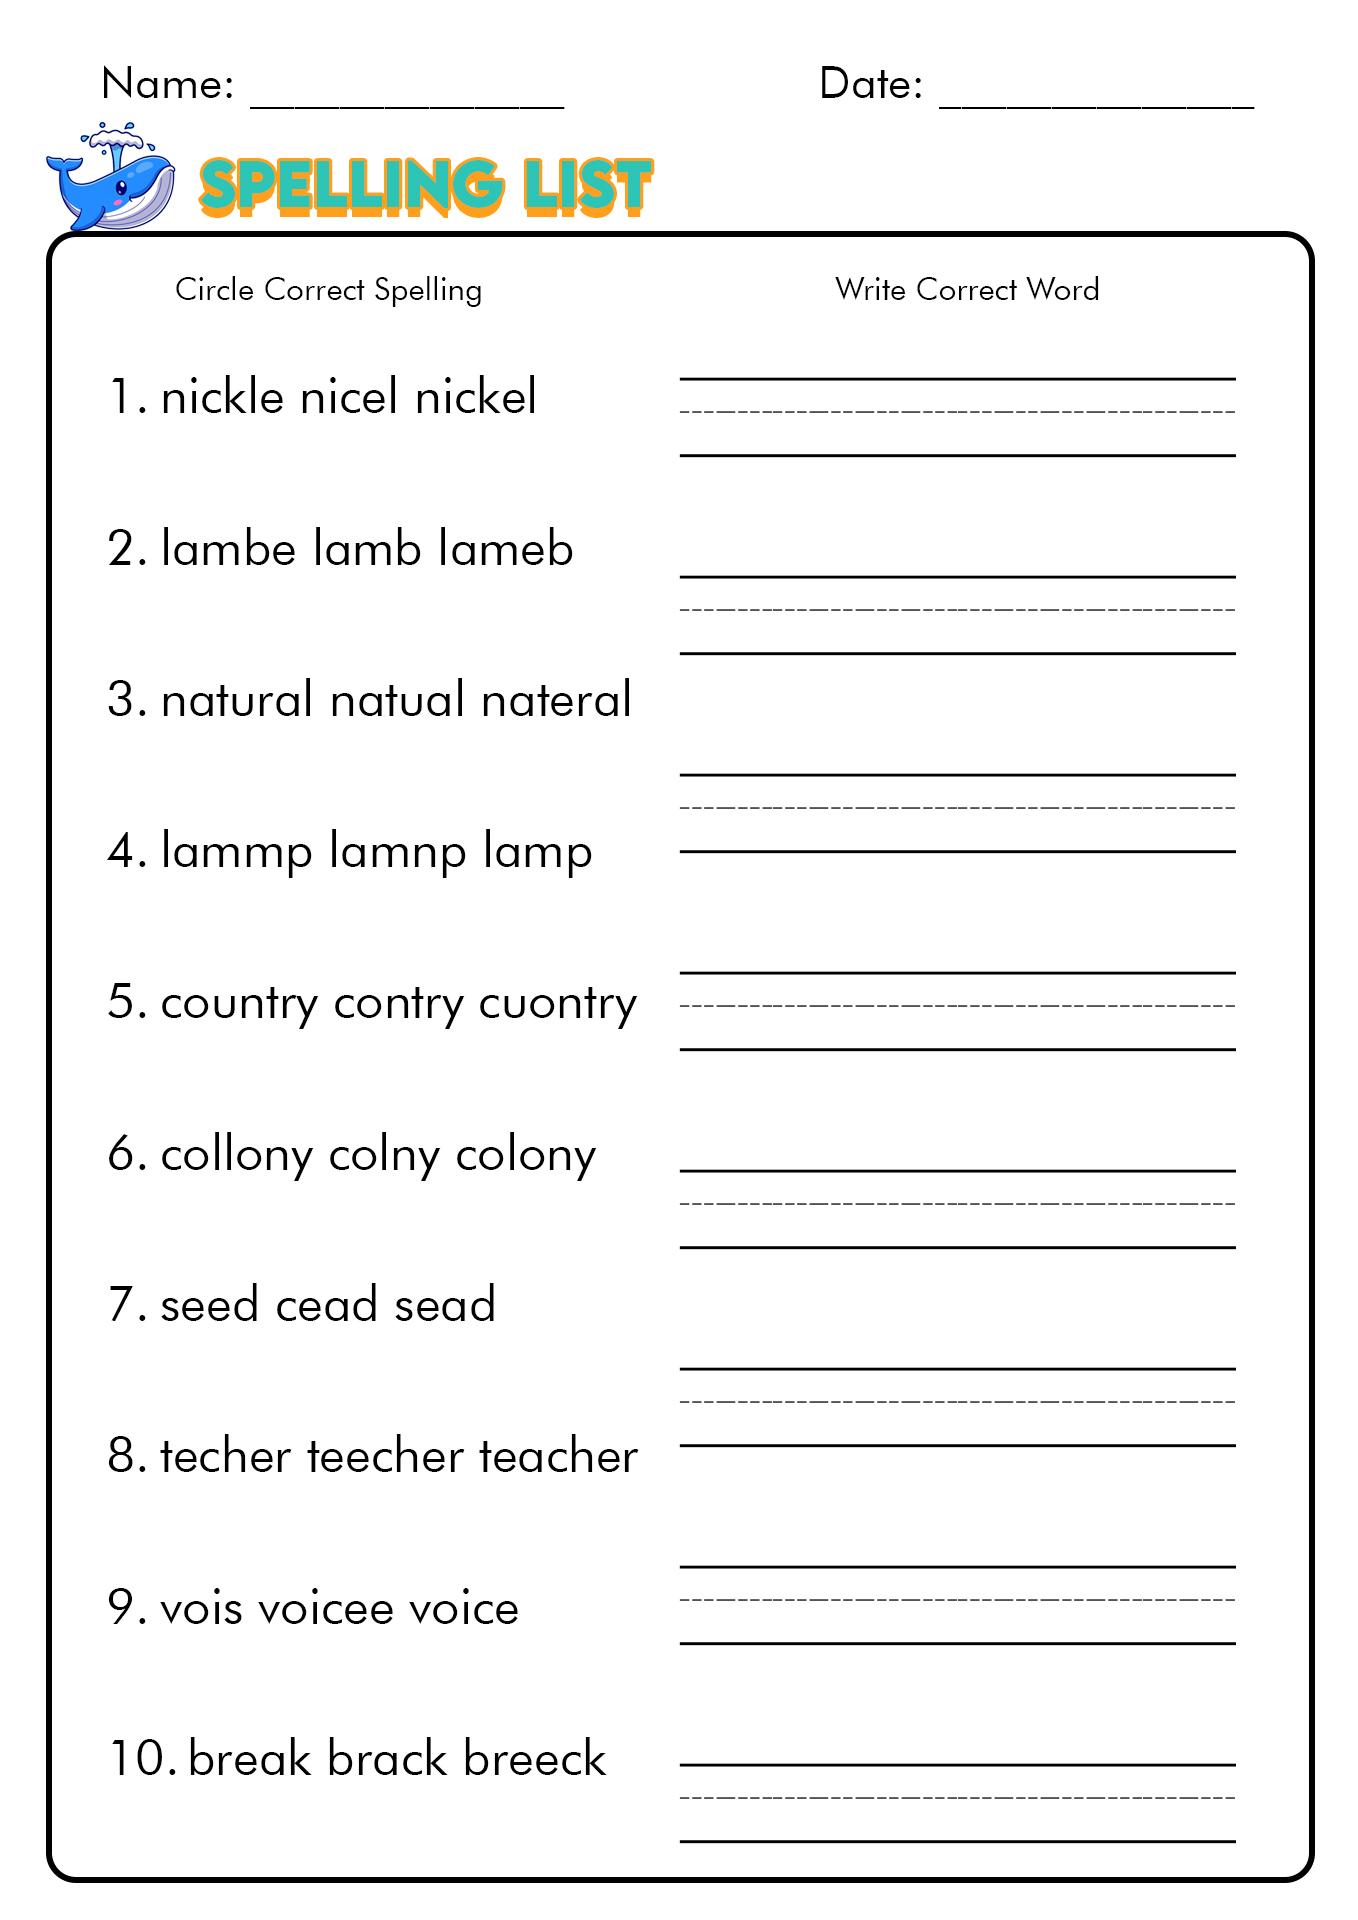 12 Free Printable Spelling Test Worksheets Worksheeto